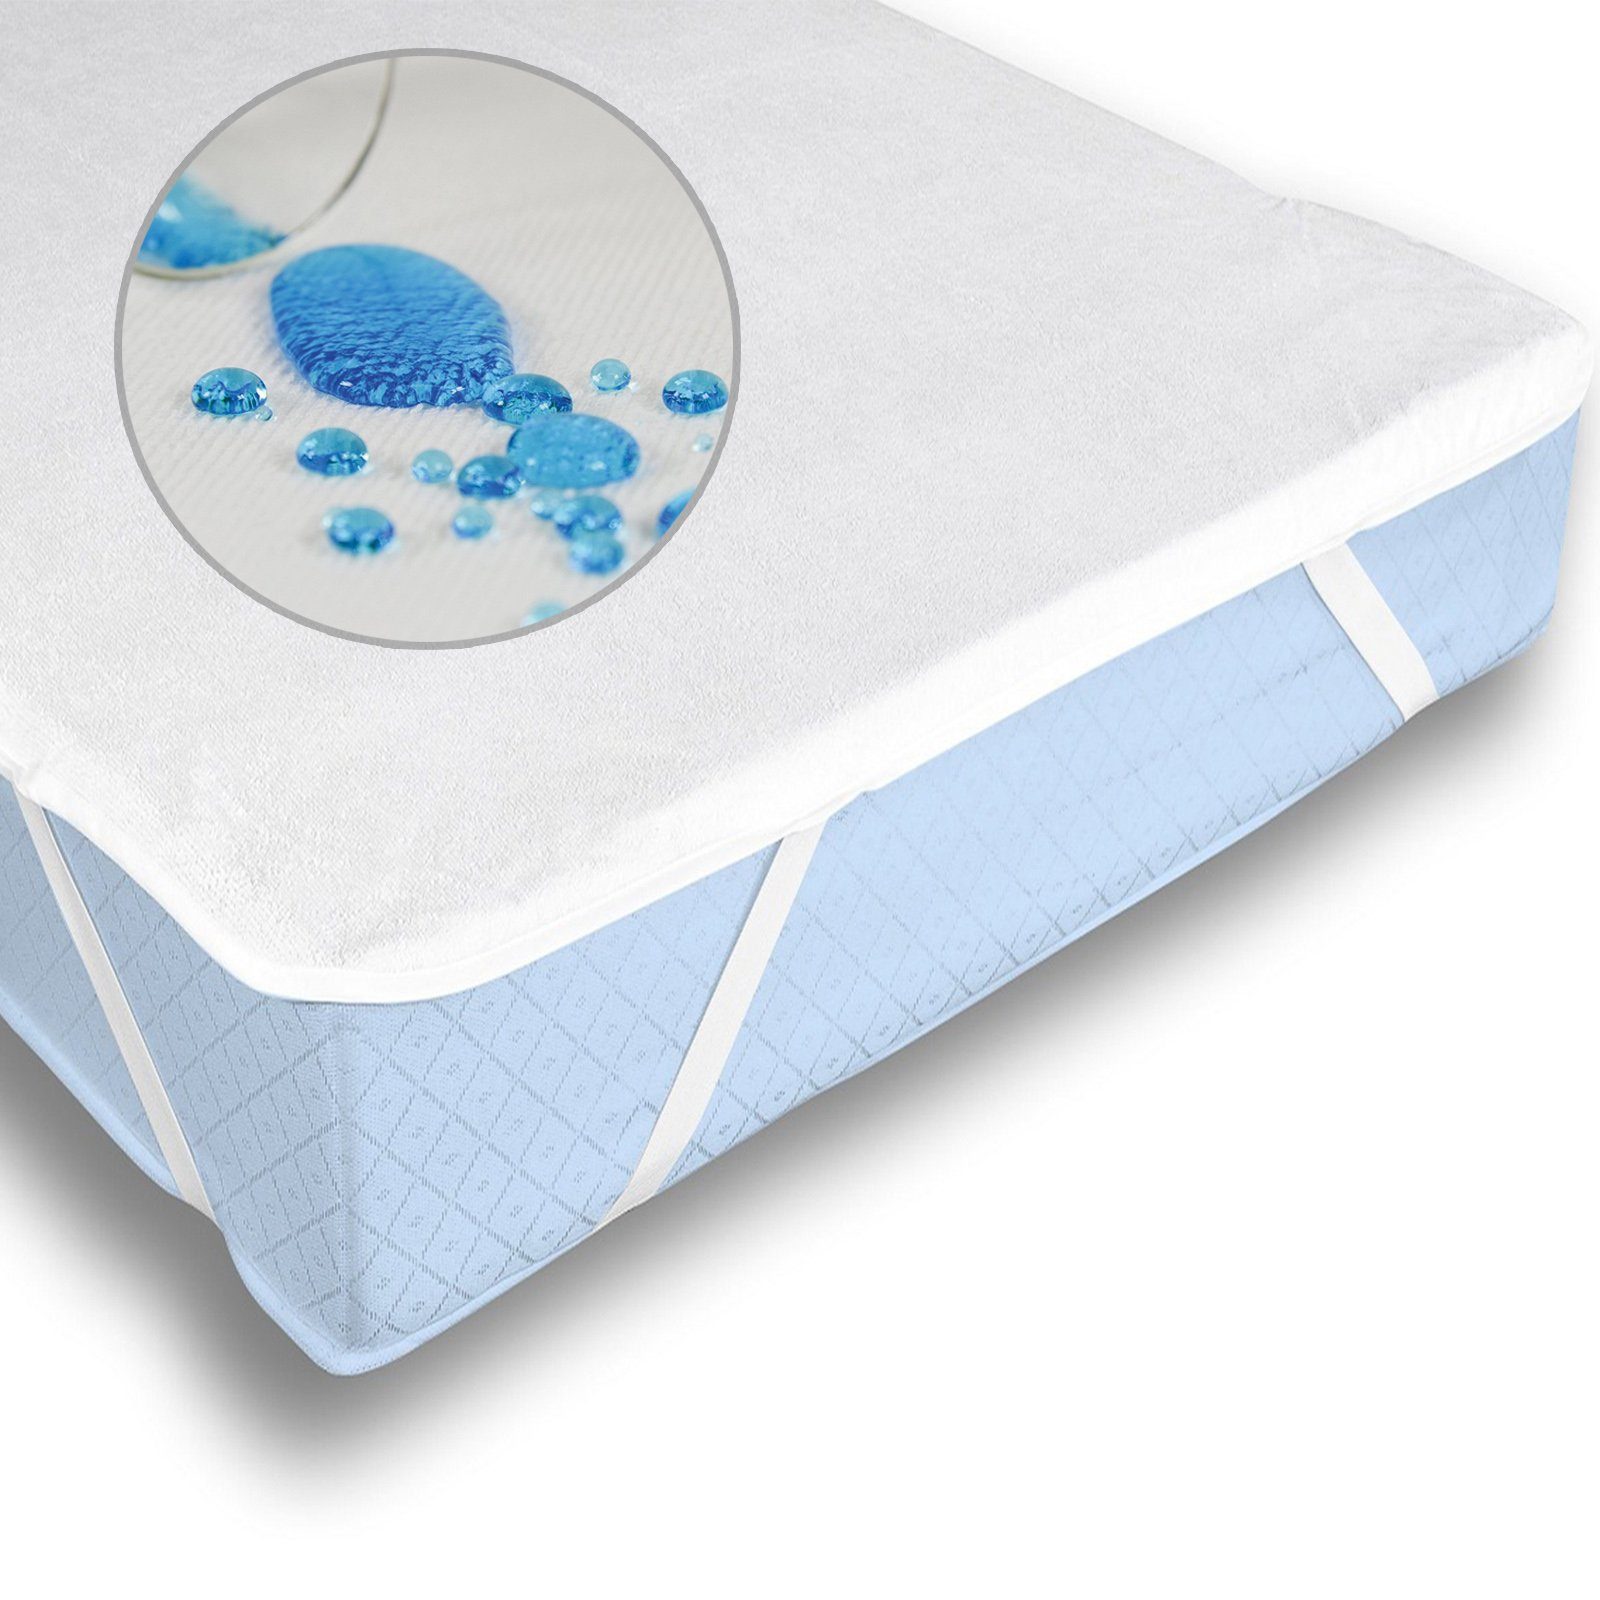 Matratzenschoner Buymax, Wasserdichter Matratzenschoner Atmungsaktiv und  bis 90° Waschbar, Auflage für jede Matratze Matratzenschutz Milbenschutz  online kaufen | OTTO